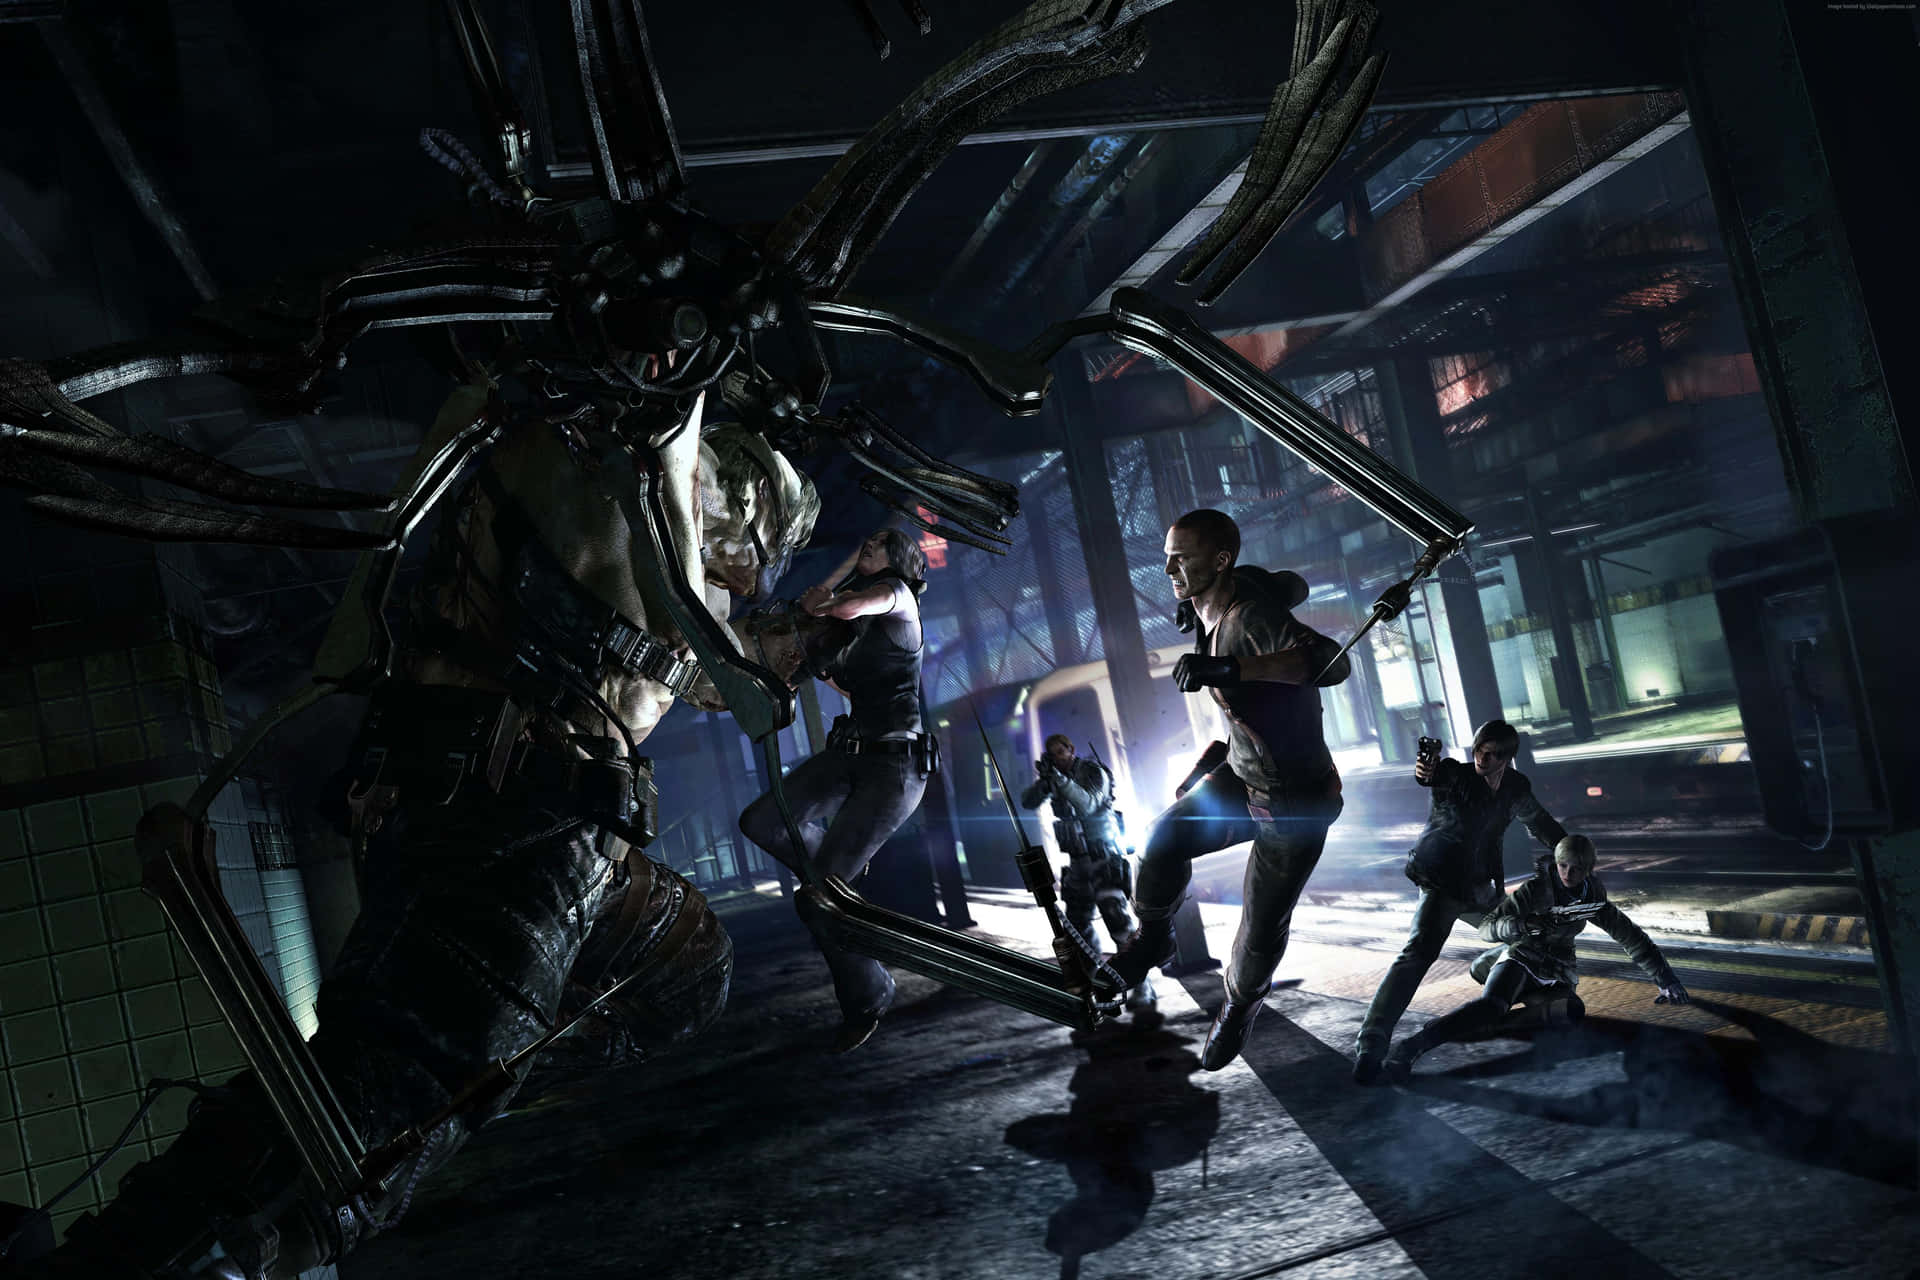 En gruppe mennesker i et mørkt område med en enorm edderkop i baggrunden. Wallpaper